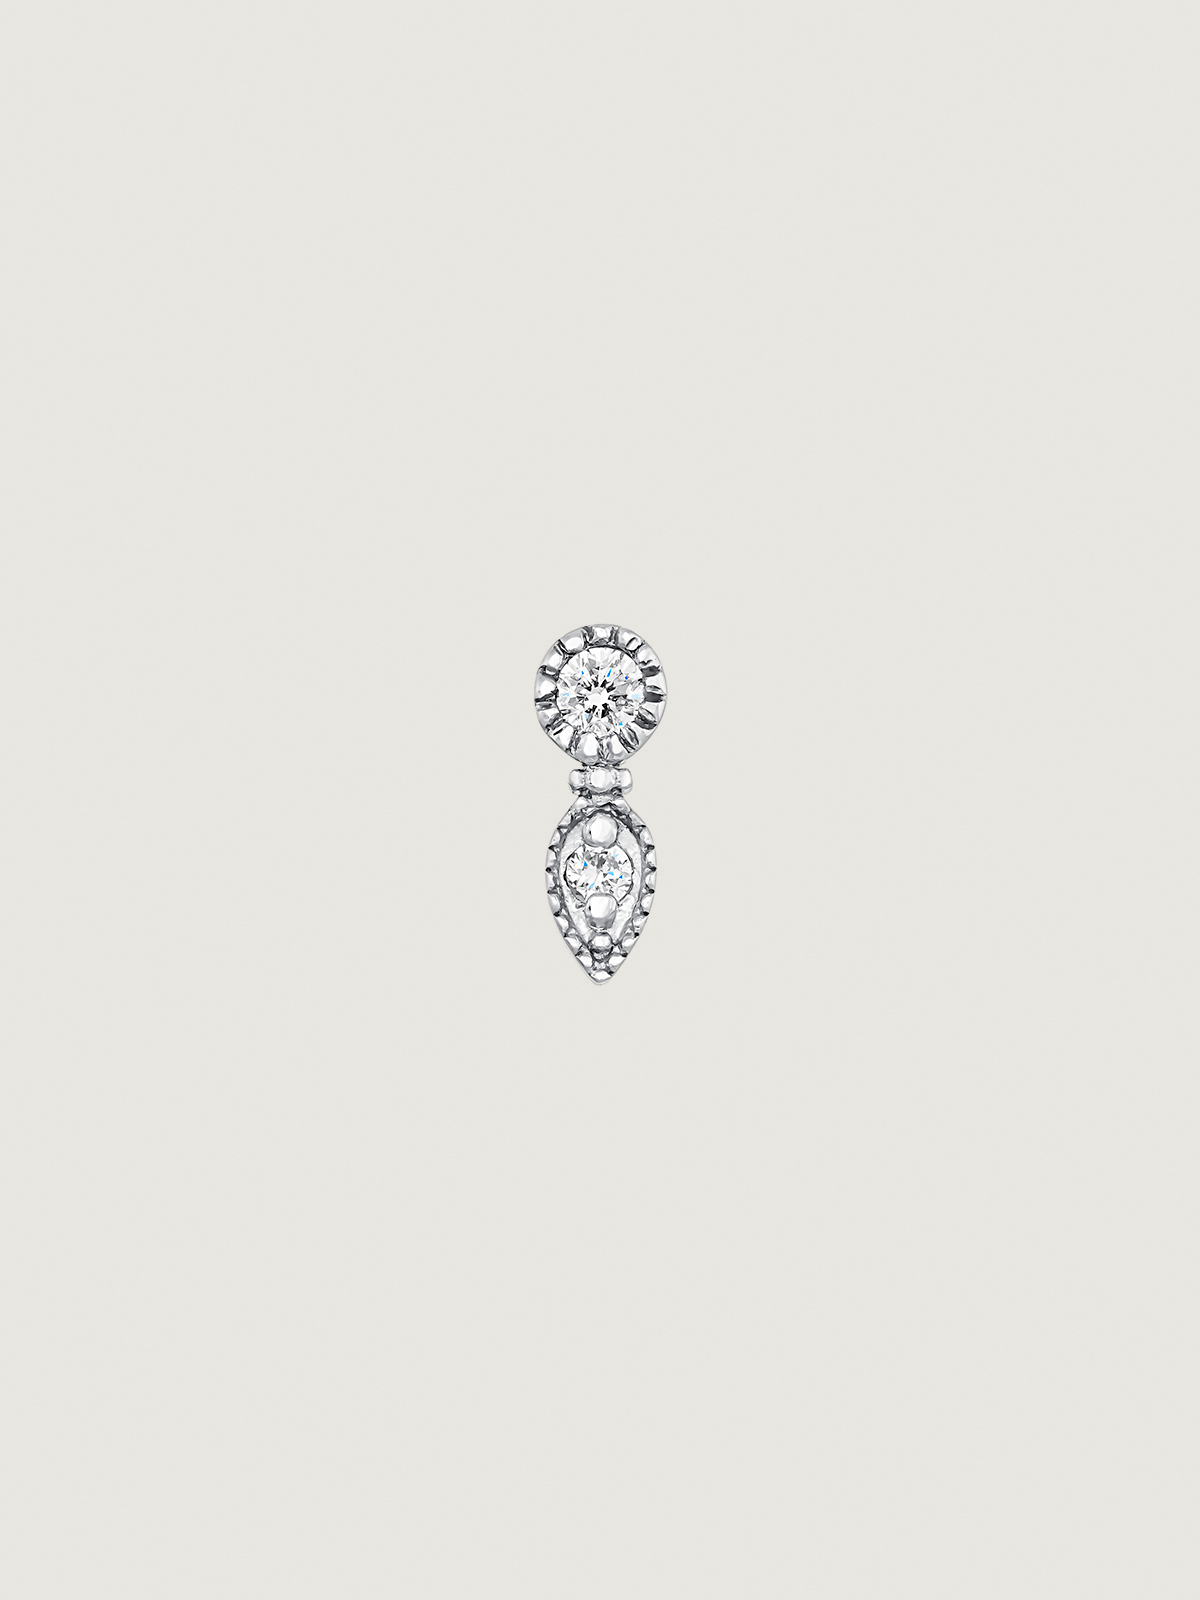 Boucle d'oreille en or blanc 9K en forme de goutte avec un diamant blanc